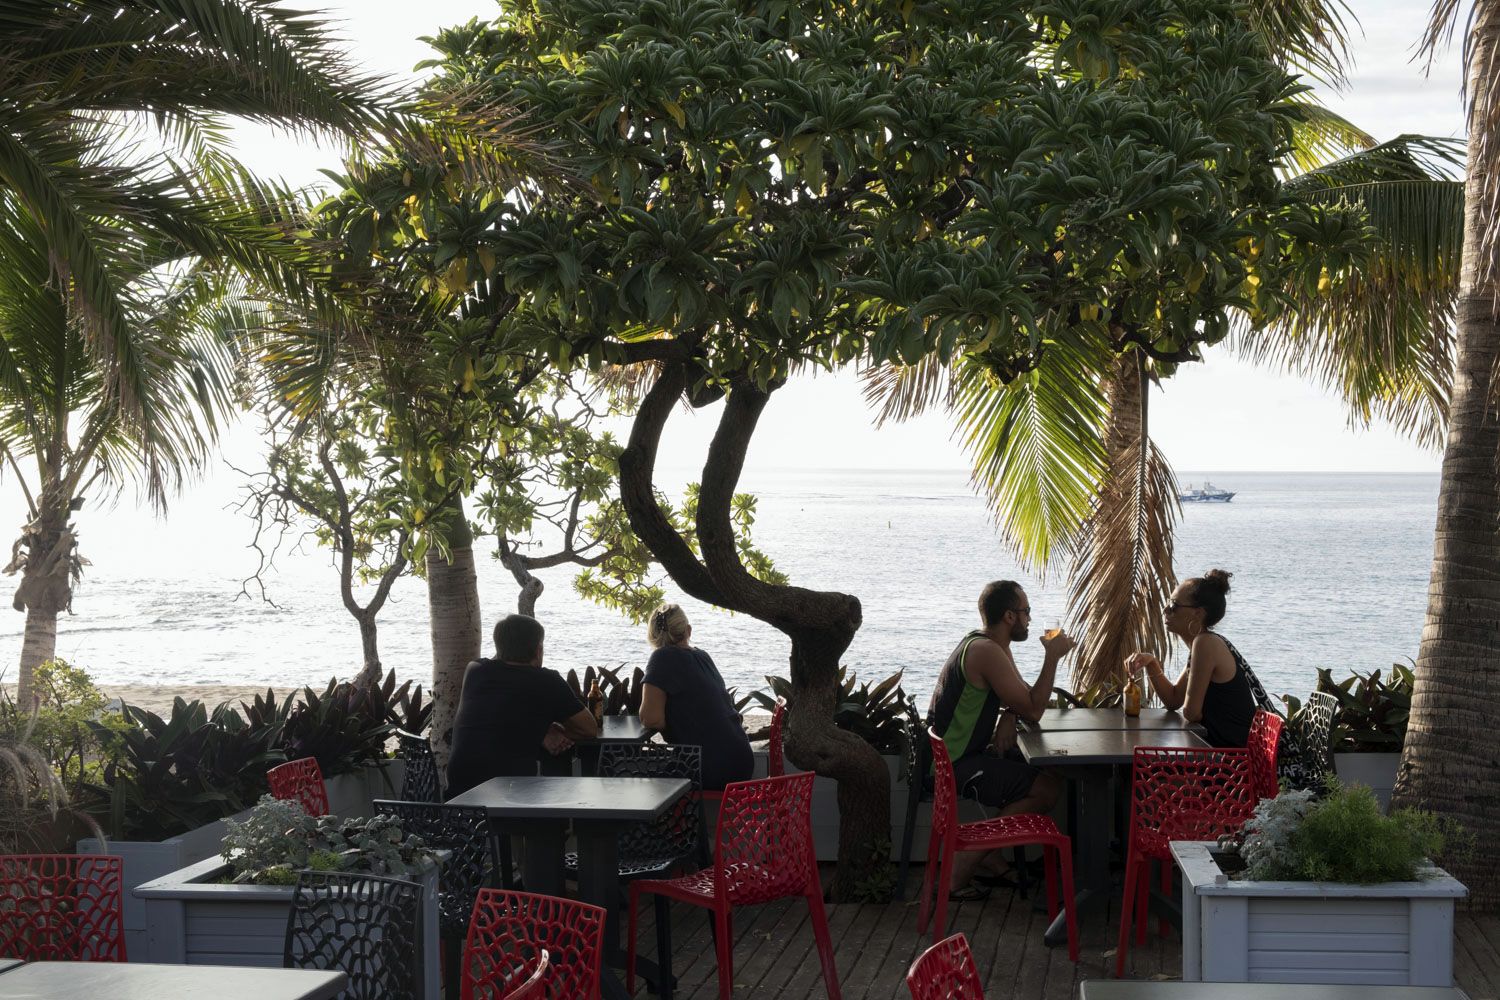 Il y a des restaurants sur le bord de plage. C’est dans un de ces restaurants que nous avons rencontré Jean-François Nativel.